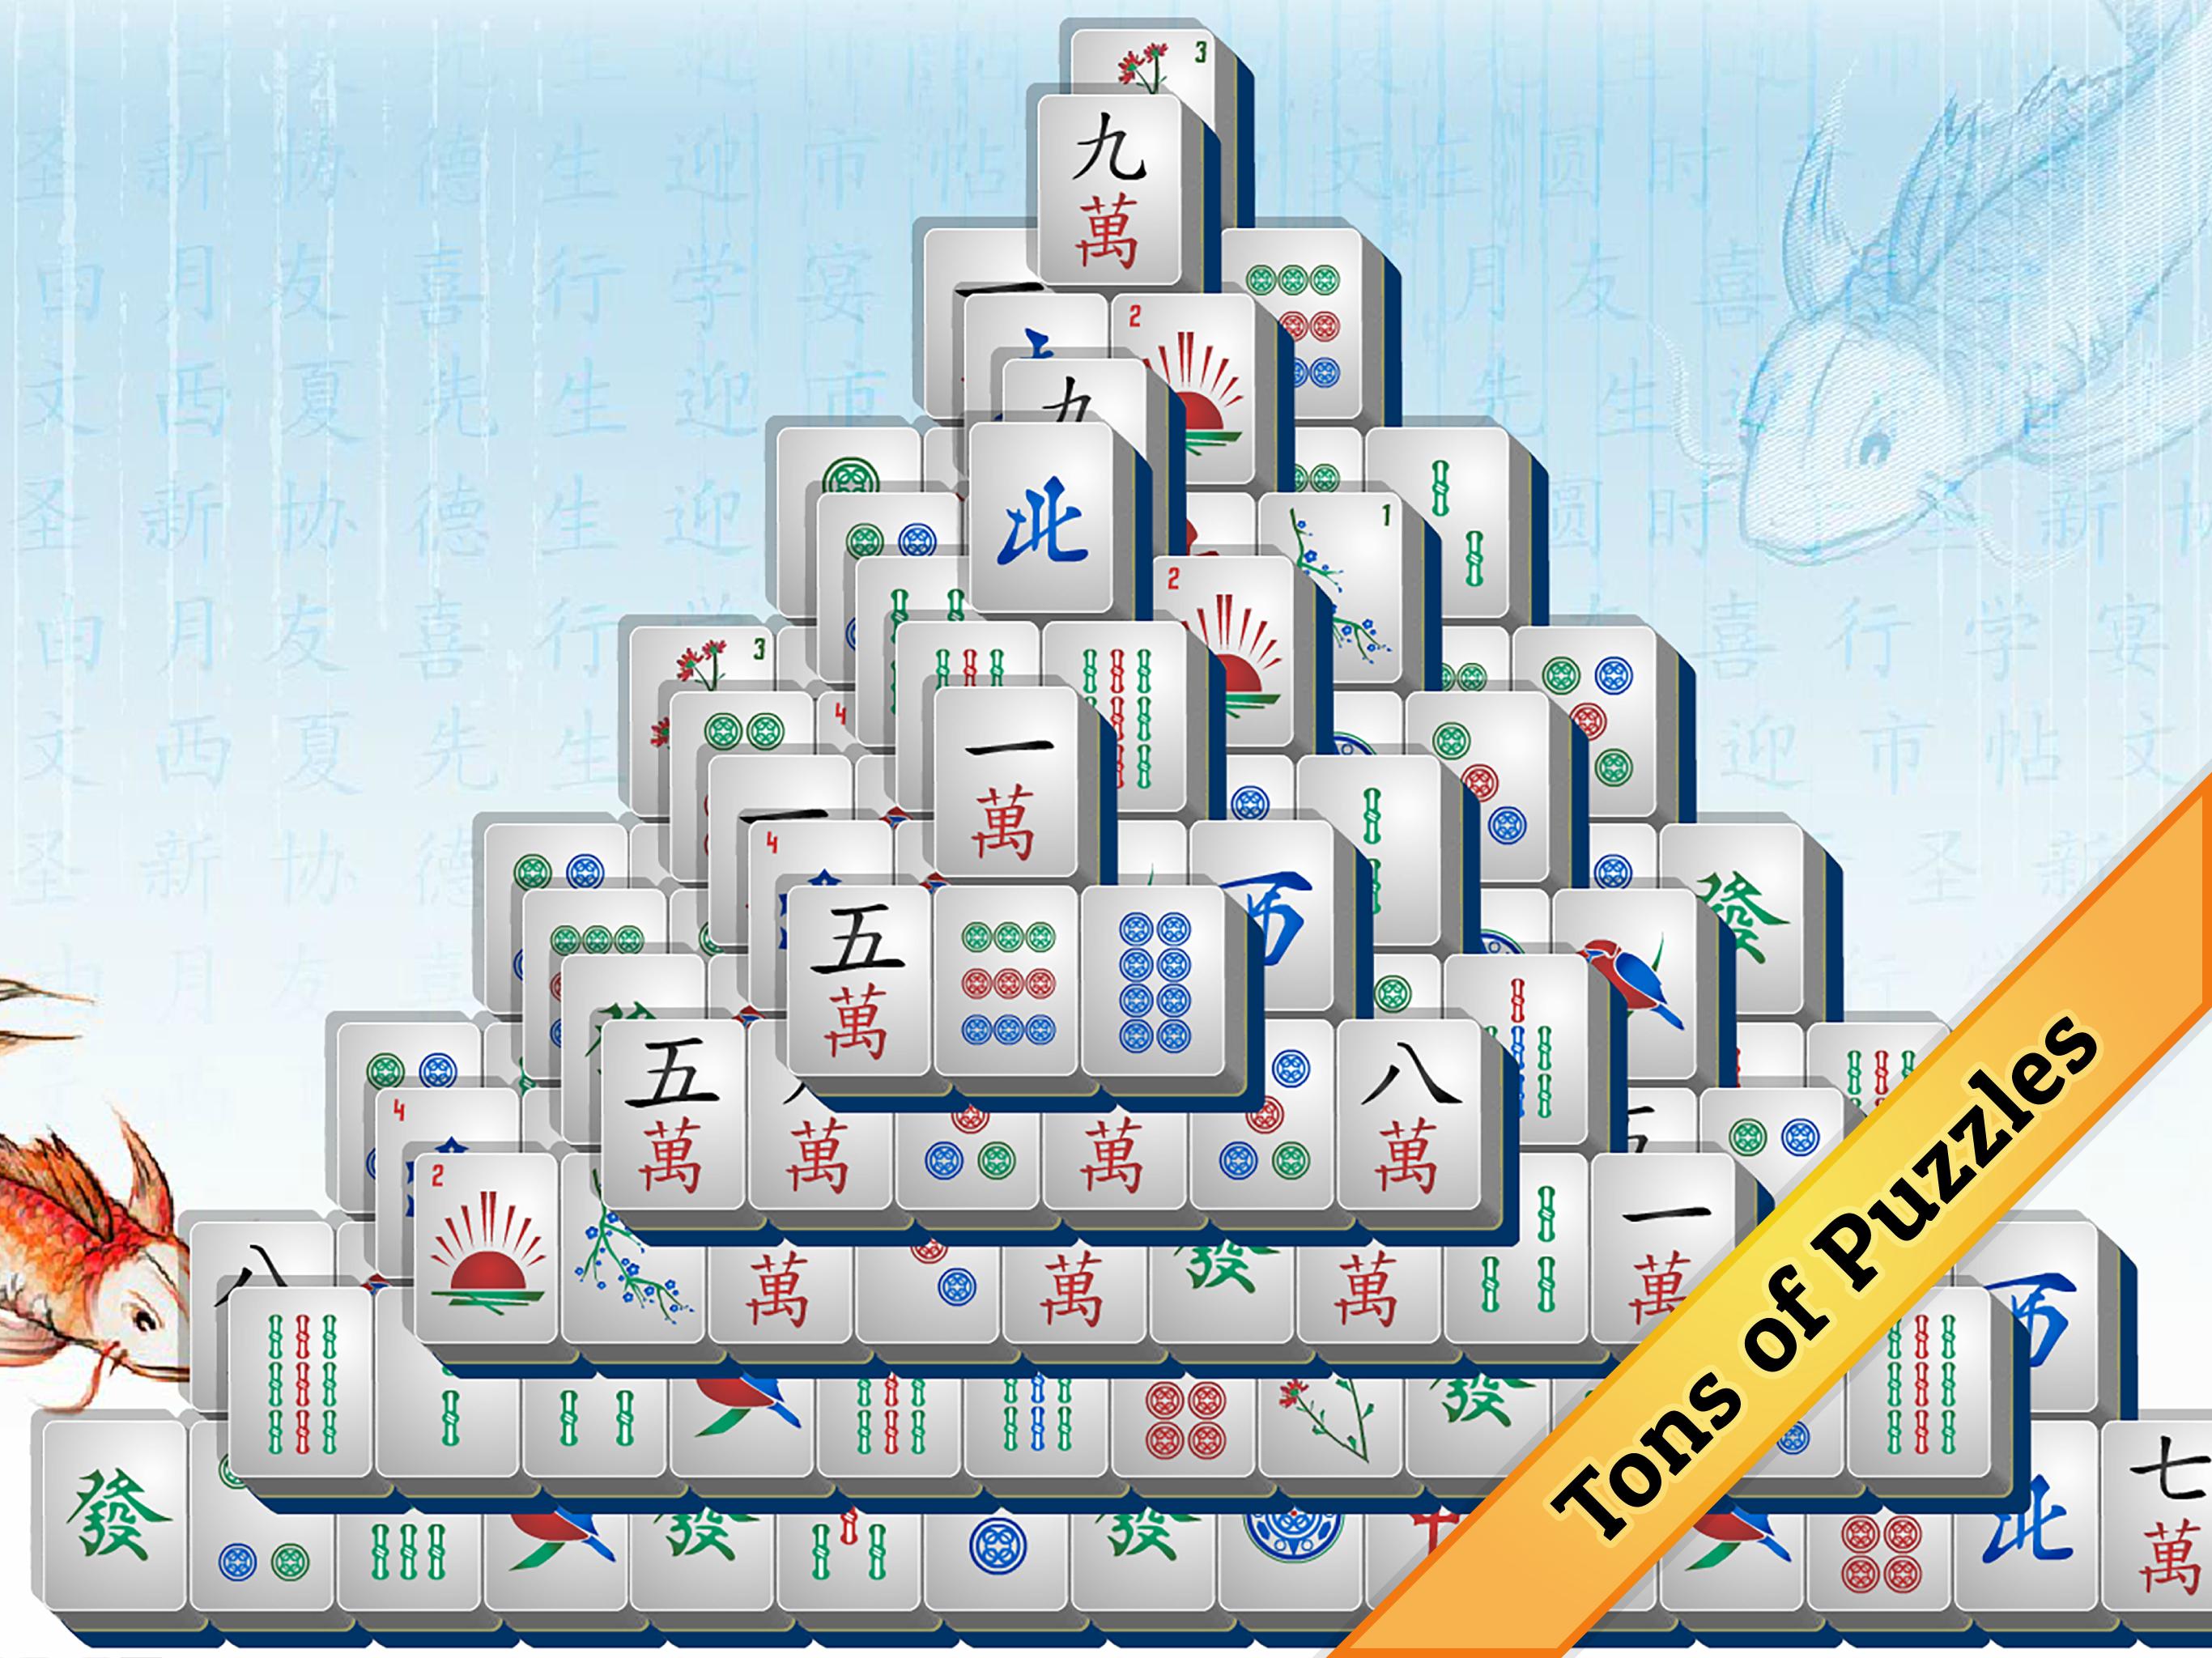 Freegames 24 Mahjong